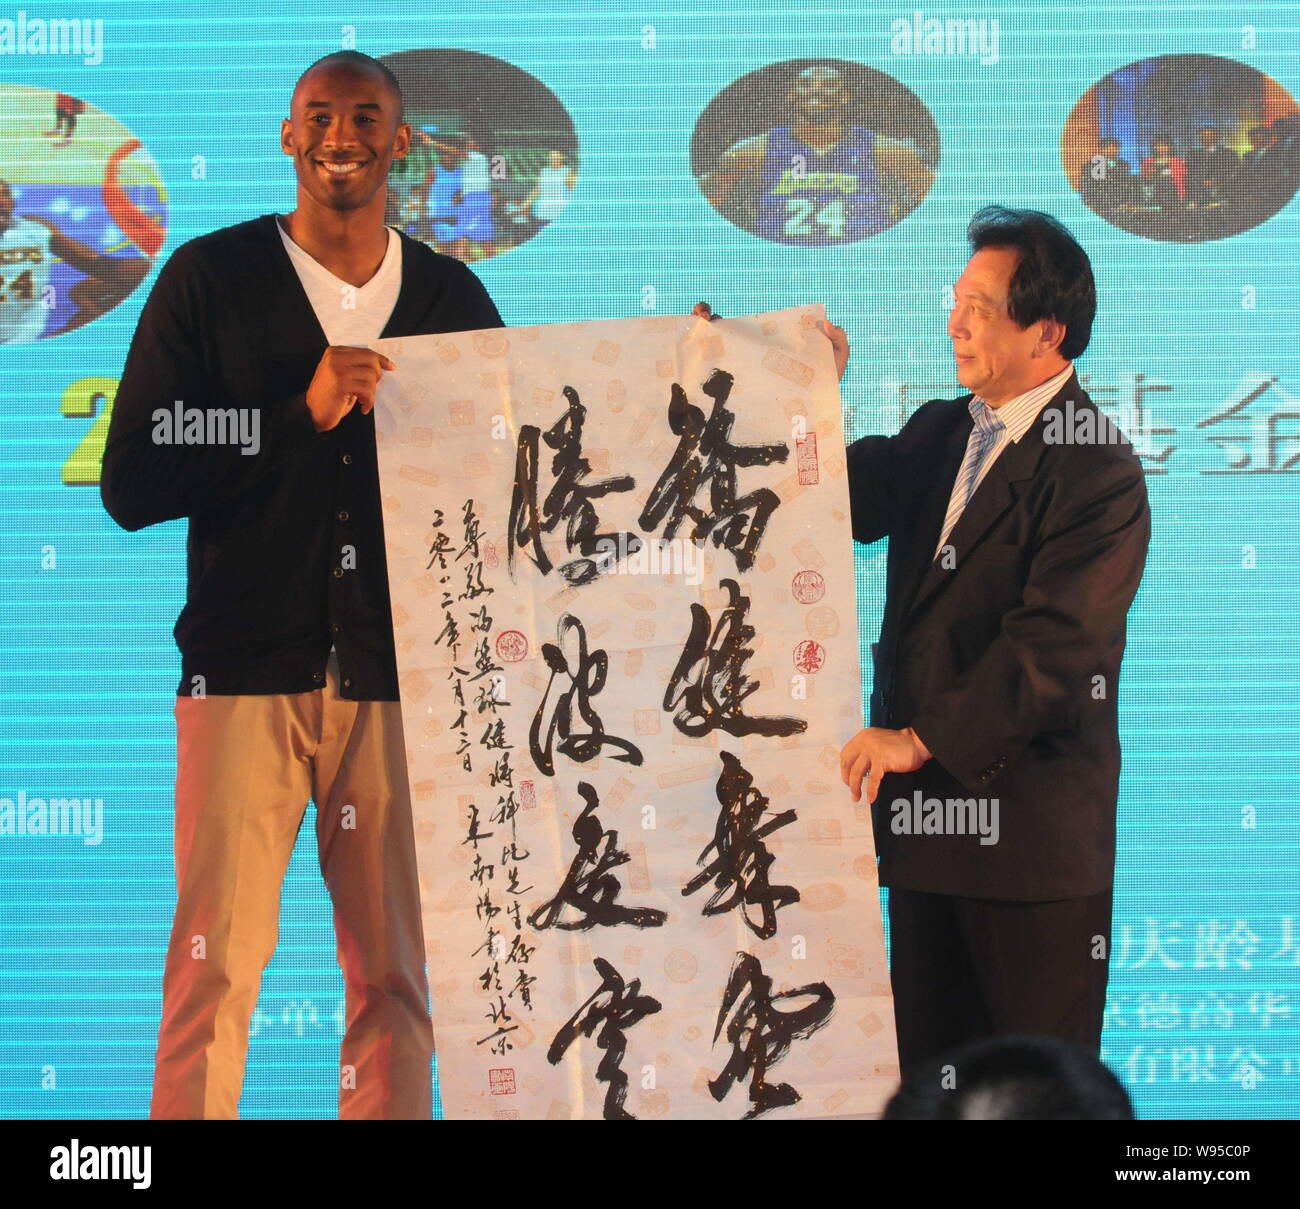 NBA Superstar Kobe Byrant, Links, erhält eine Kalligraphische arbeiten als Geschenk von einem Gast während einer Nächstenliebe Bankett der Kobe Bryant Fonds in Shanghai, China Stockfoto